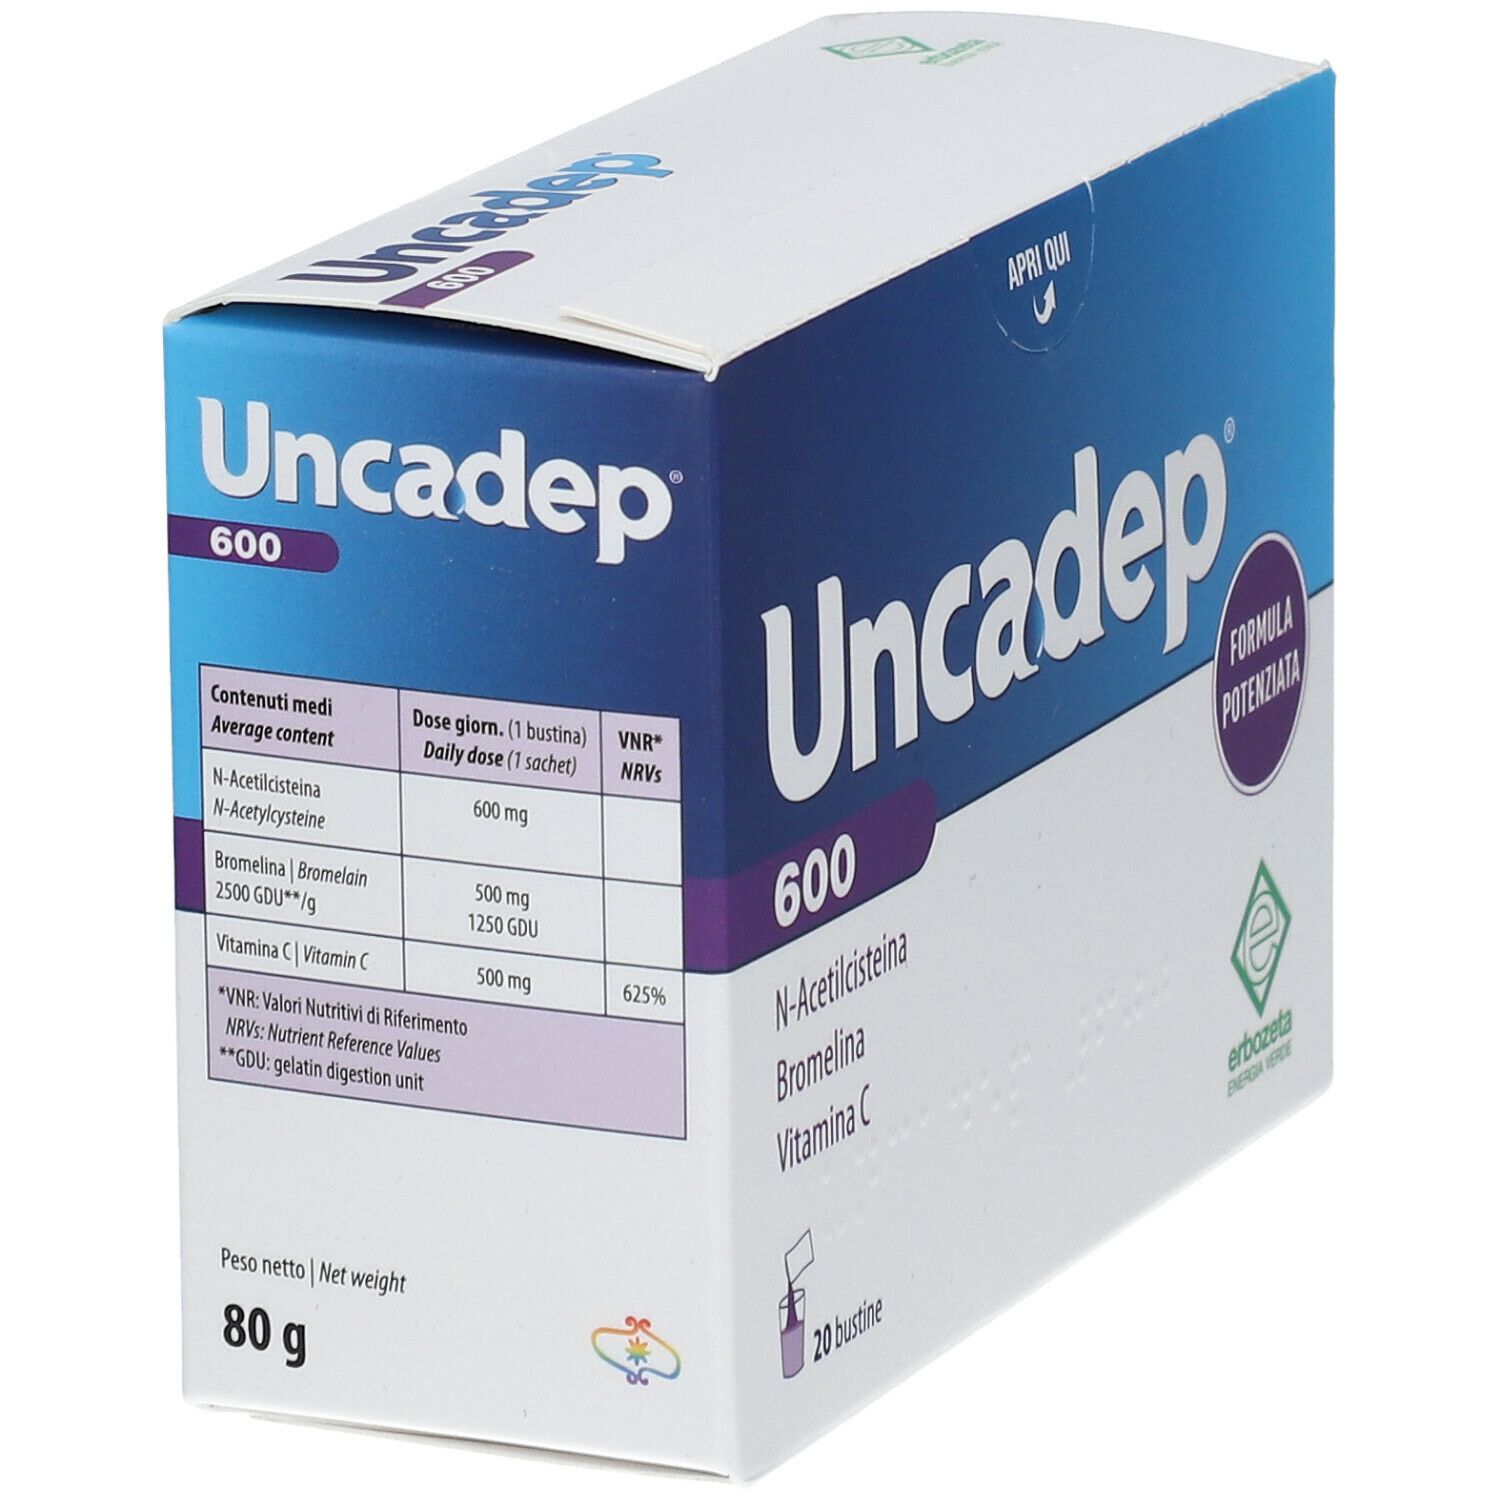 Uncadep® 600